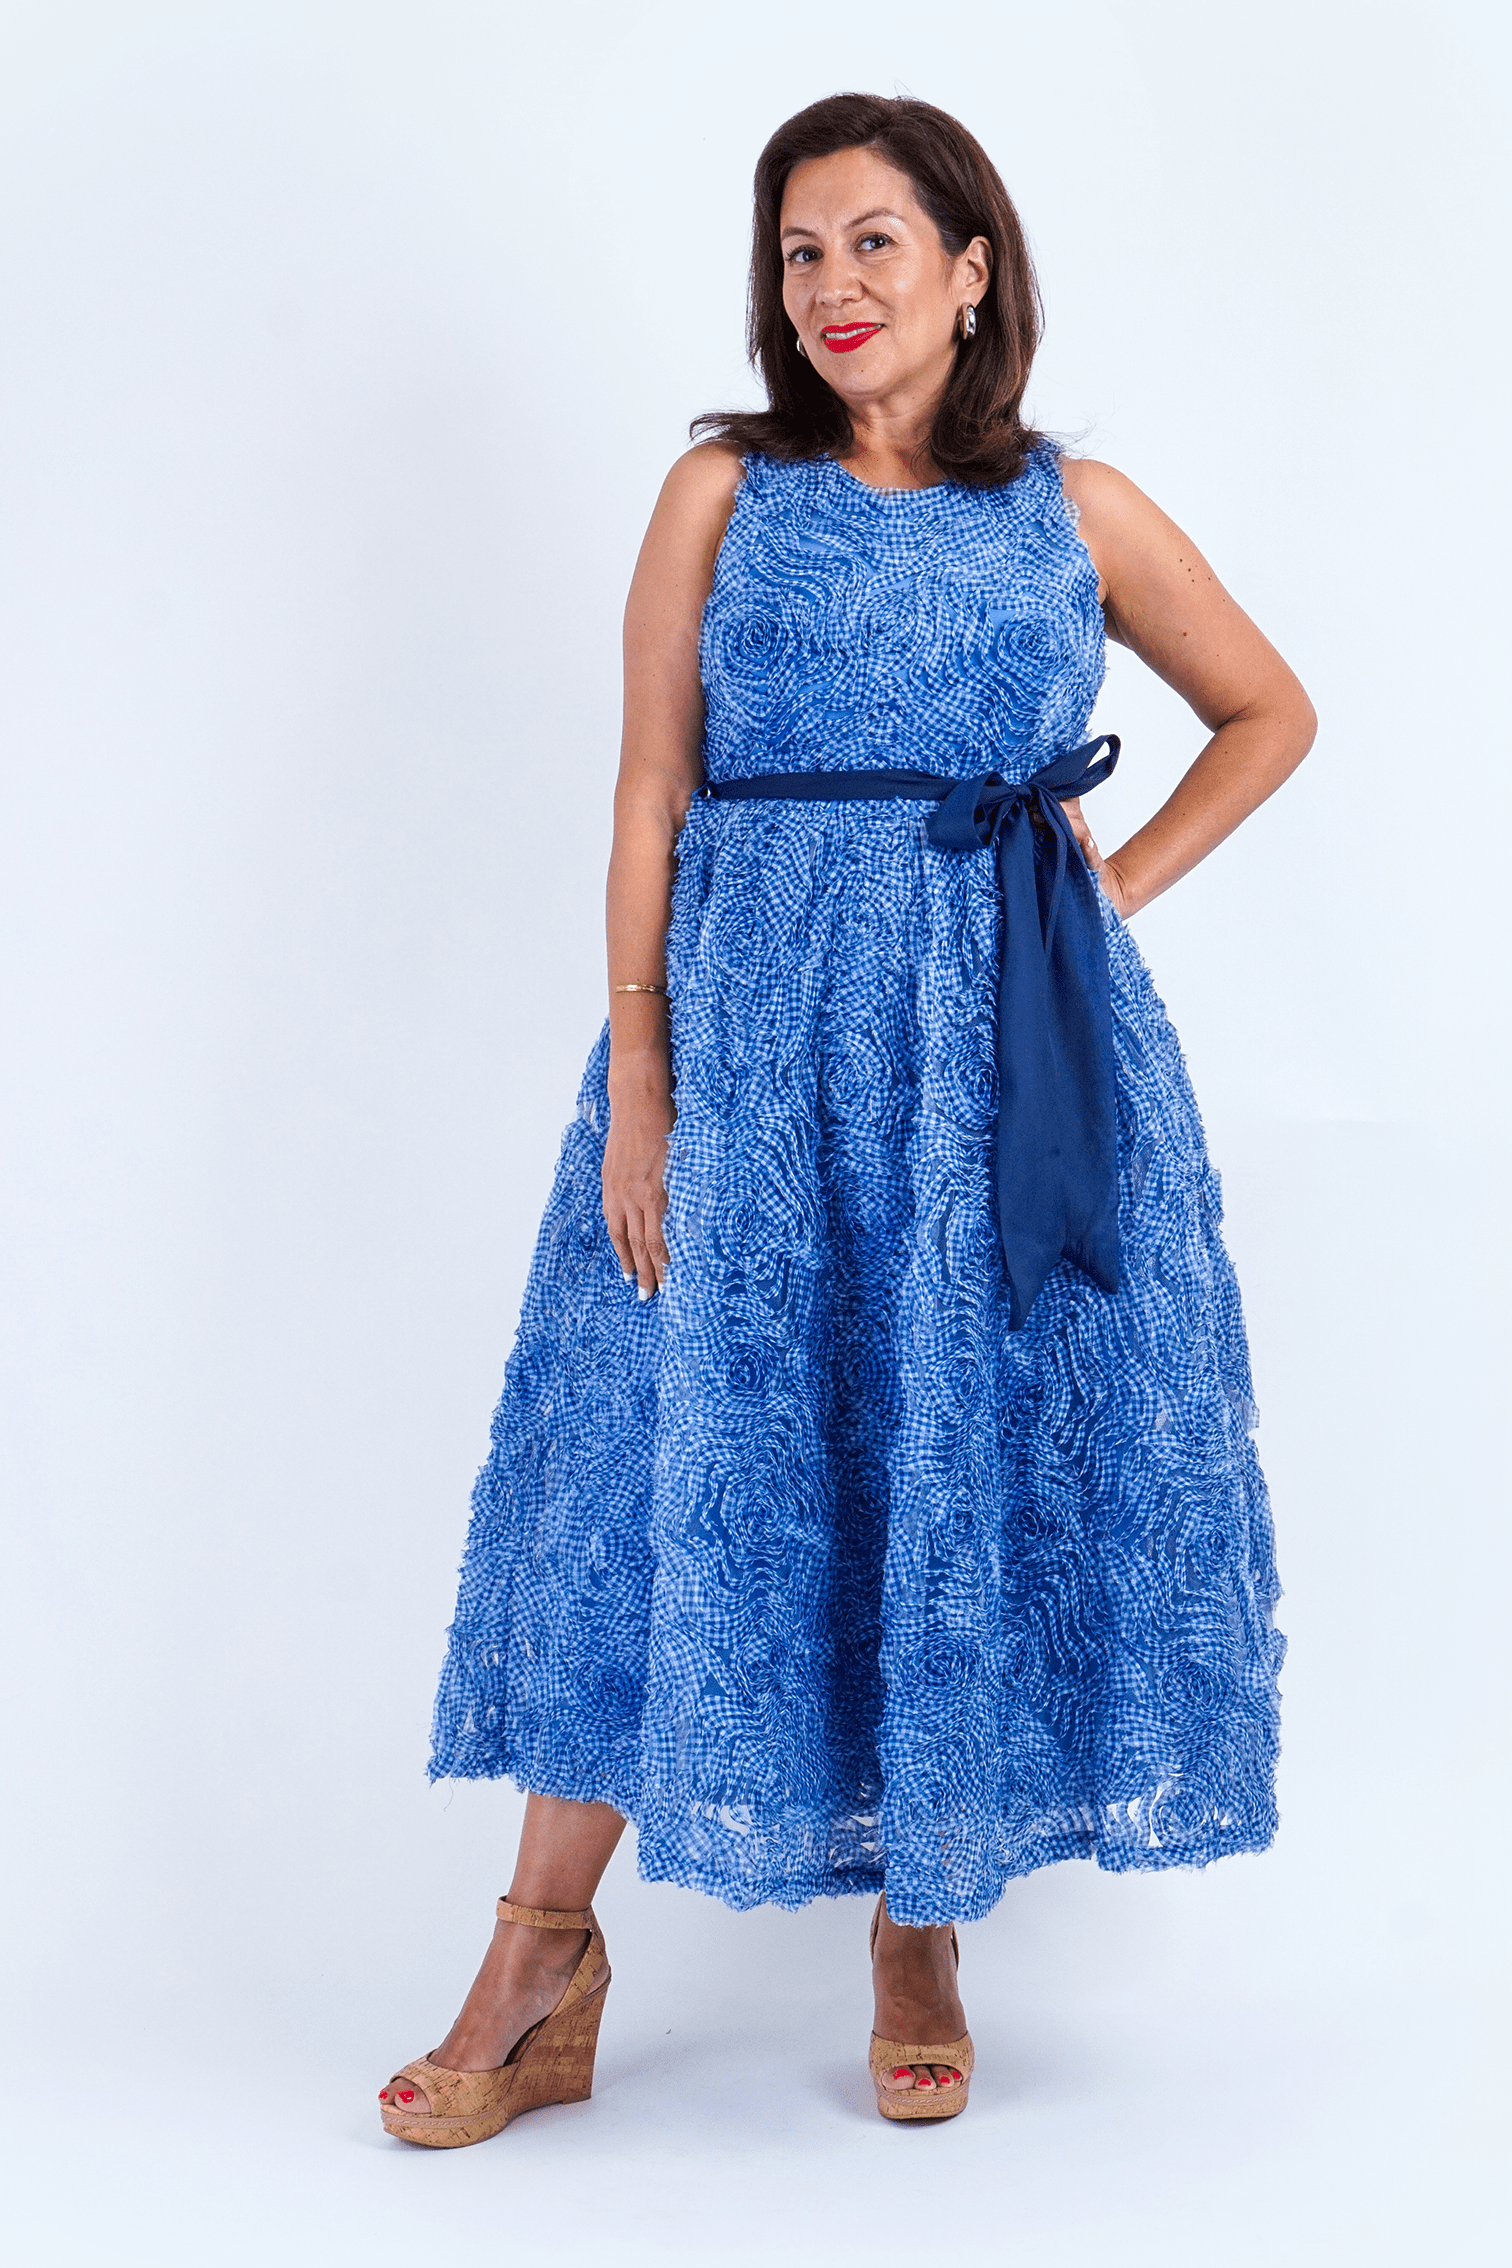 Chloe Dao Boutique DRESSES Blue 3D Floral Midi Dress